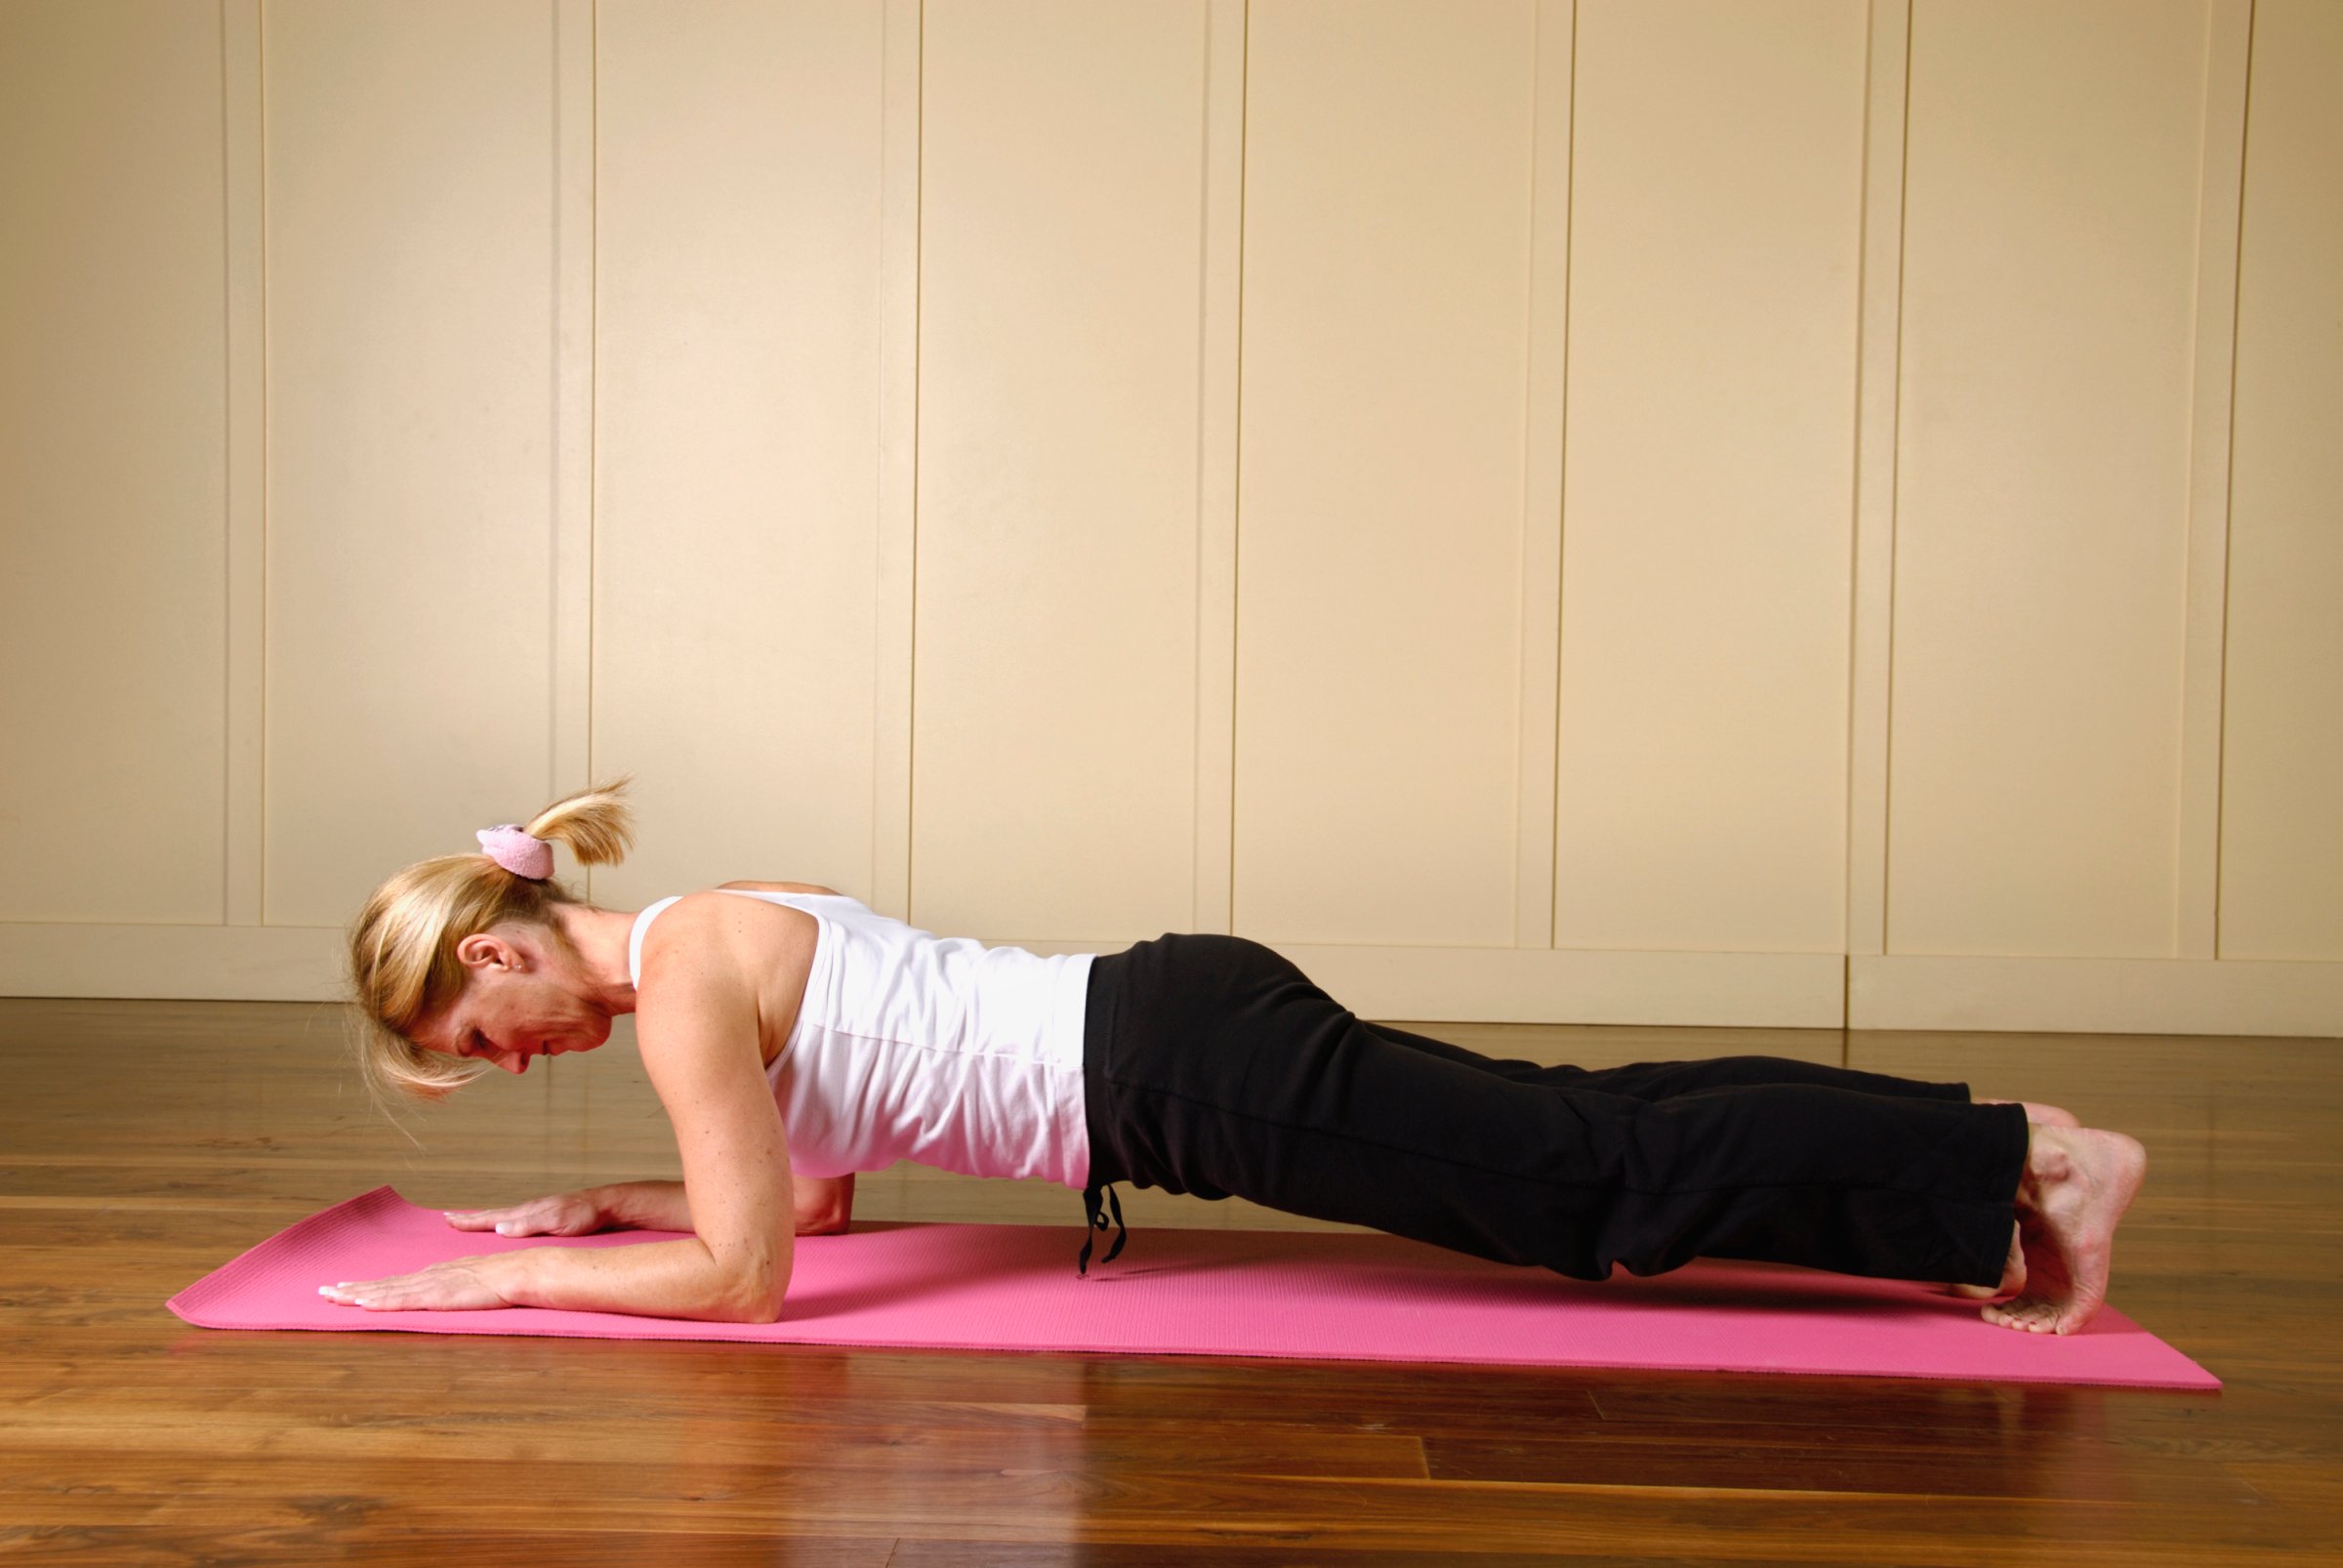 Yoga forearm plank